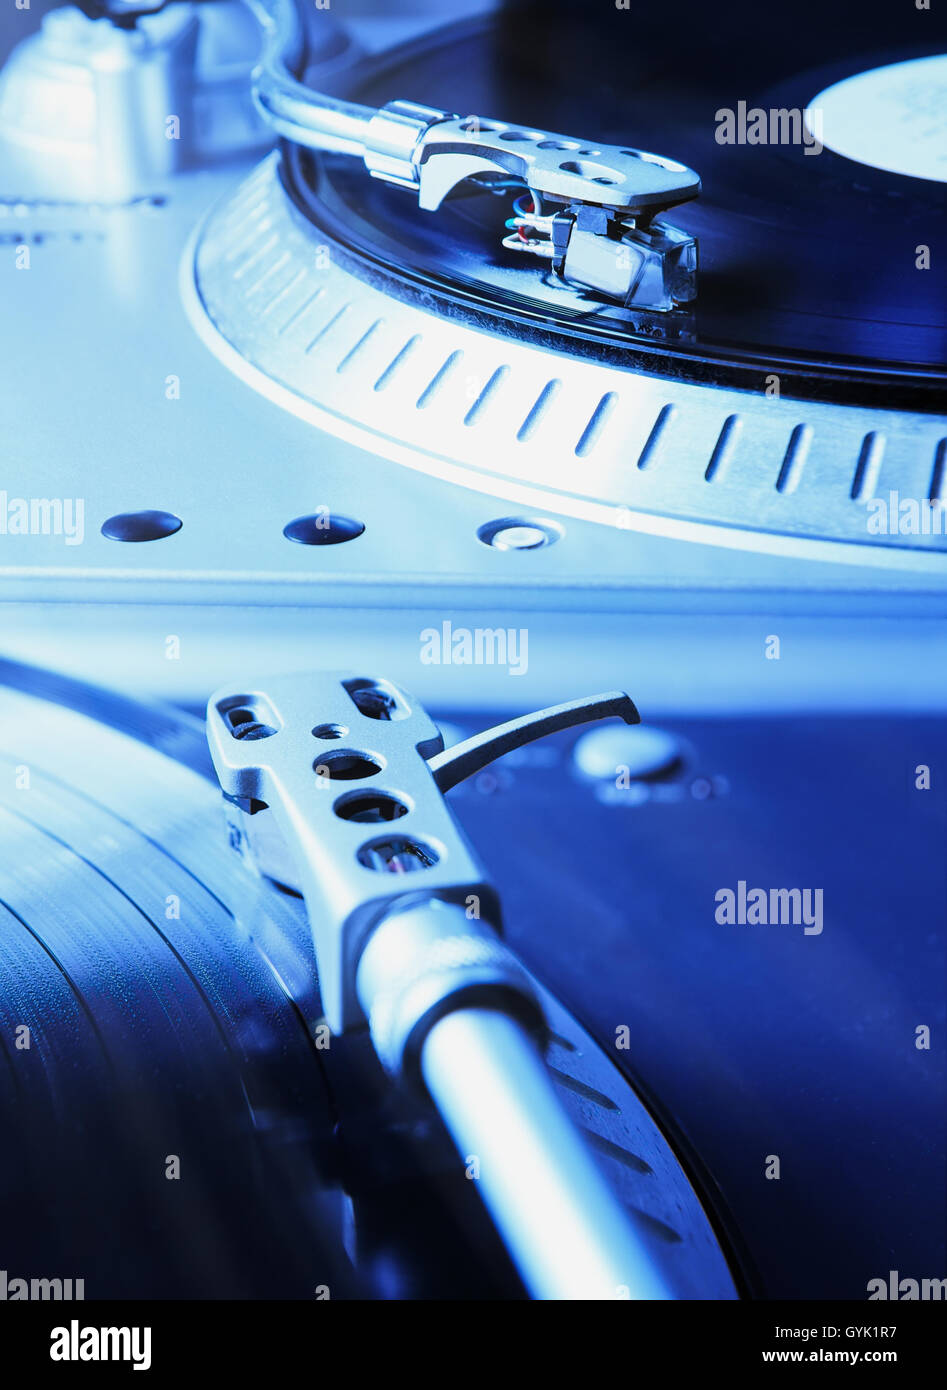 Plattenspieler-Spieler mit musikalischen Vinyl-Schallplatte. Nützlich für DJ, Diskothek und Retro-Thema. Gesättigte blaue Farbe Stockfoto